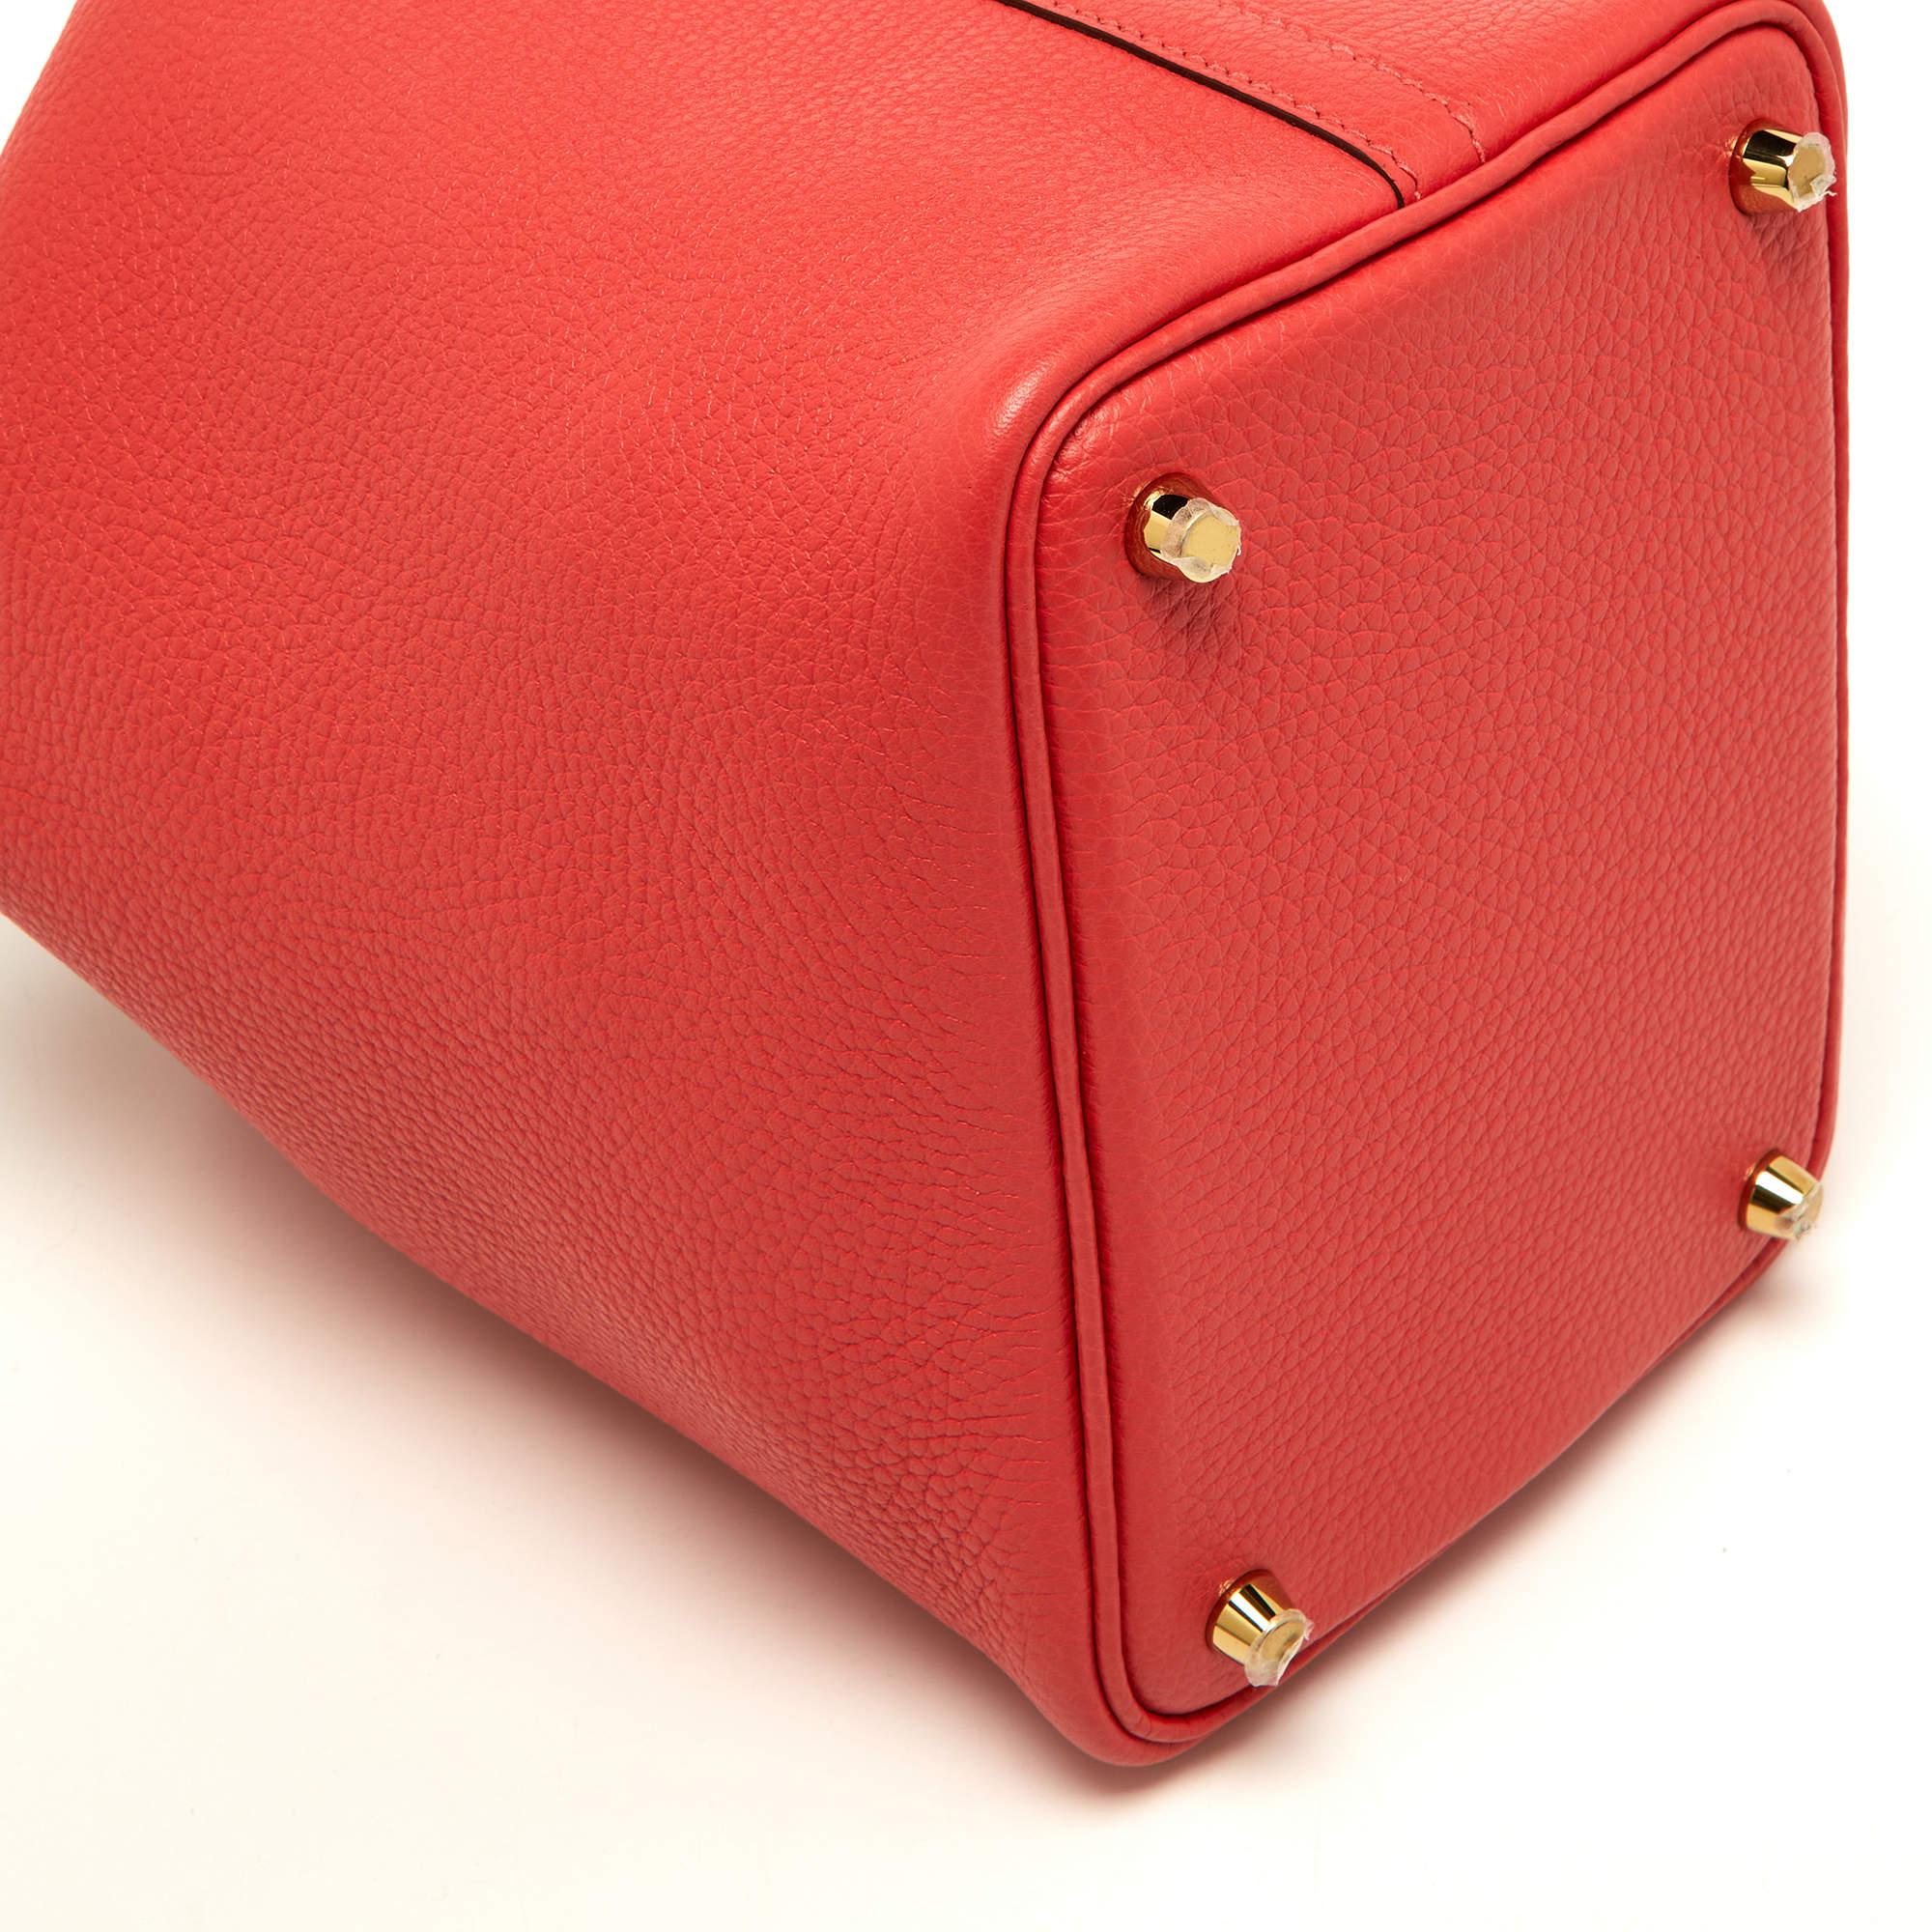 Hermès Rose Jaipur Taurillon Clemence Leather Picotin Lock 18 Bag 4